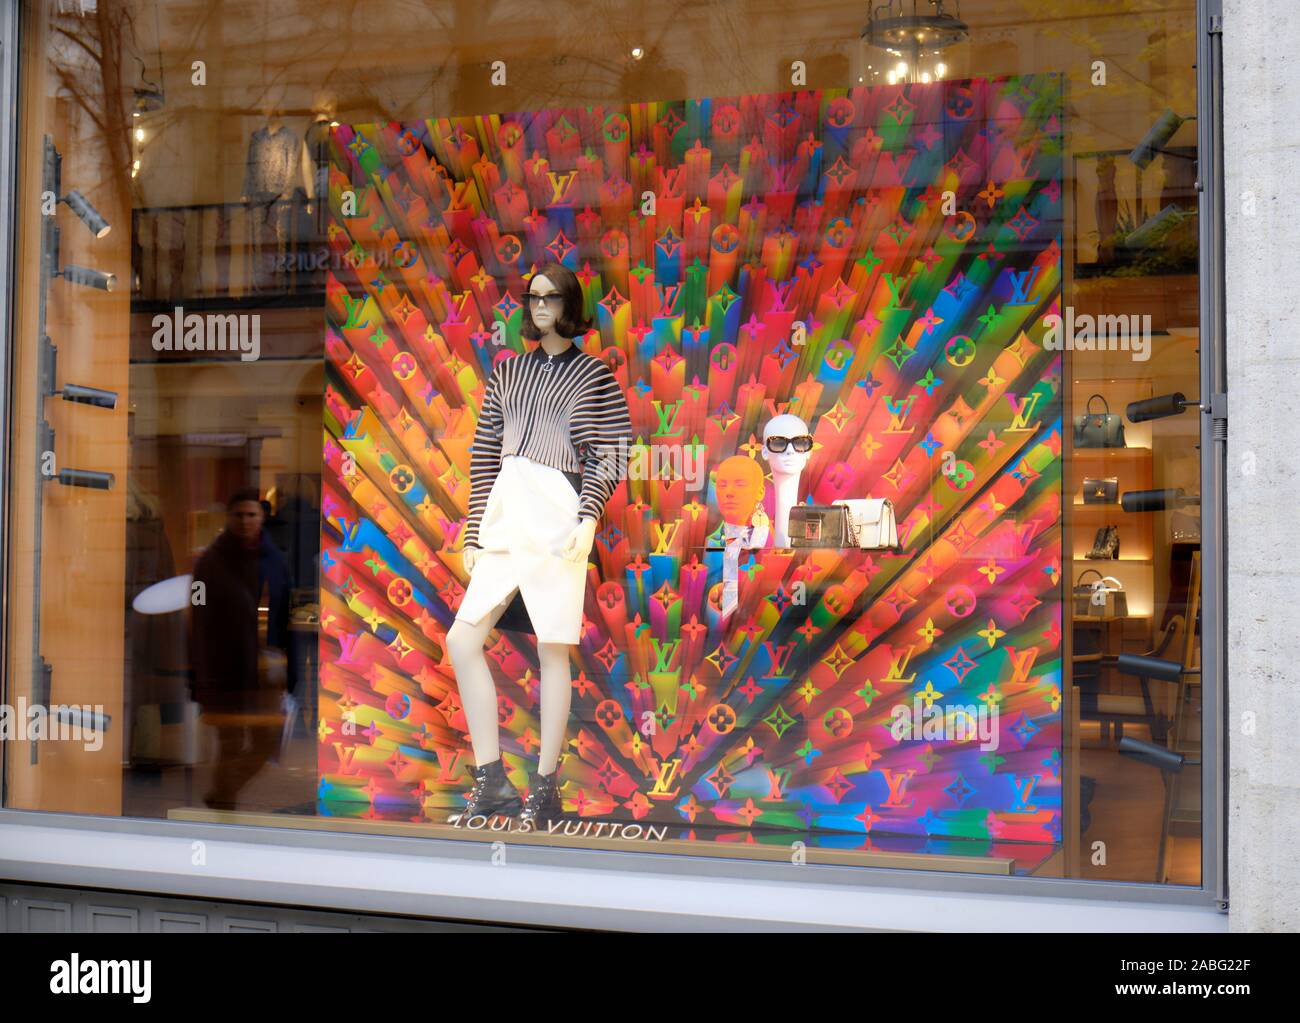 Signo de alta moda y la exclusiva marca Louis Vuitton Fotografía de stock -  Alamy